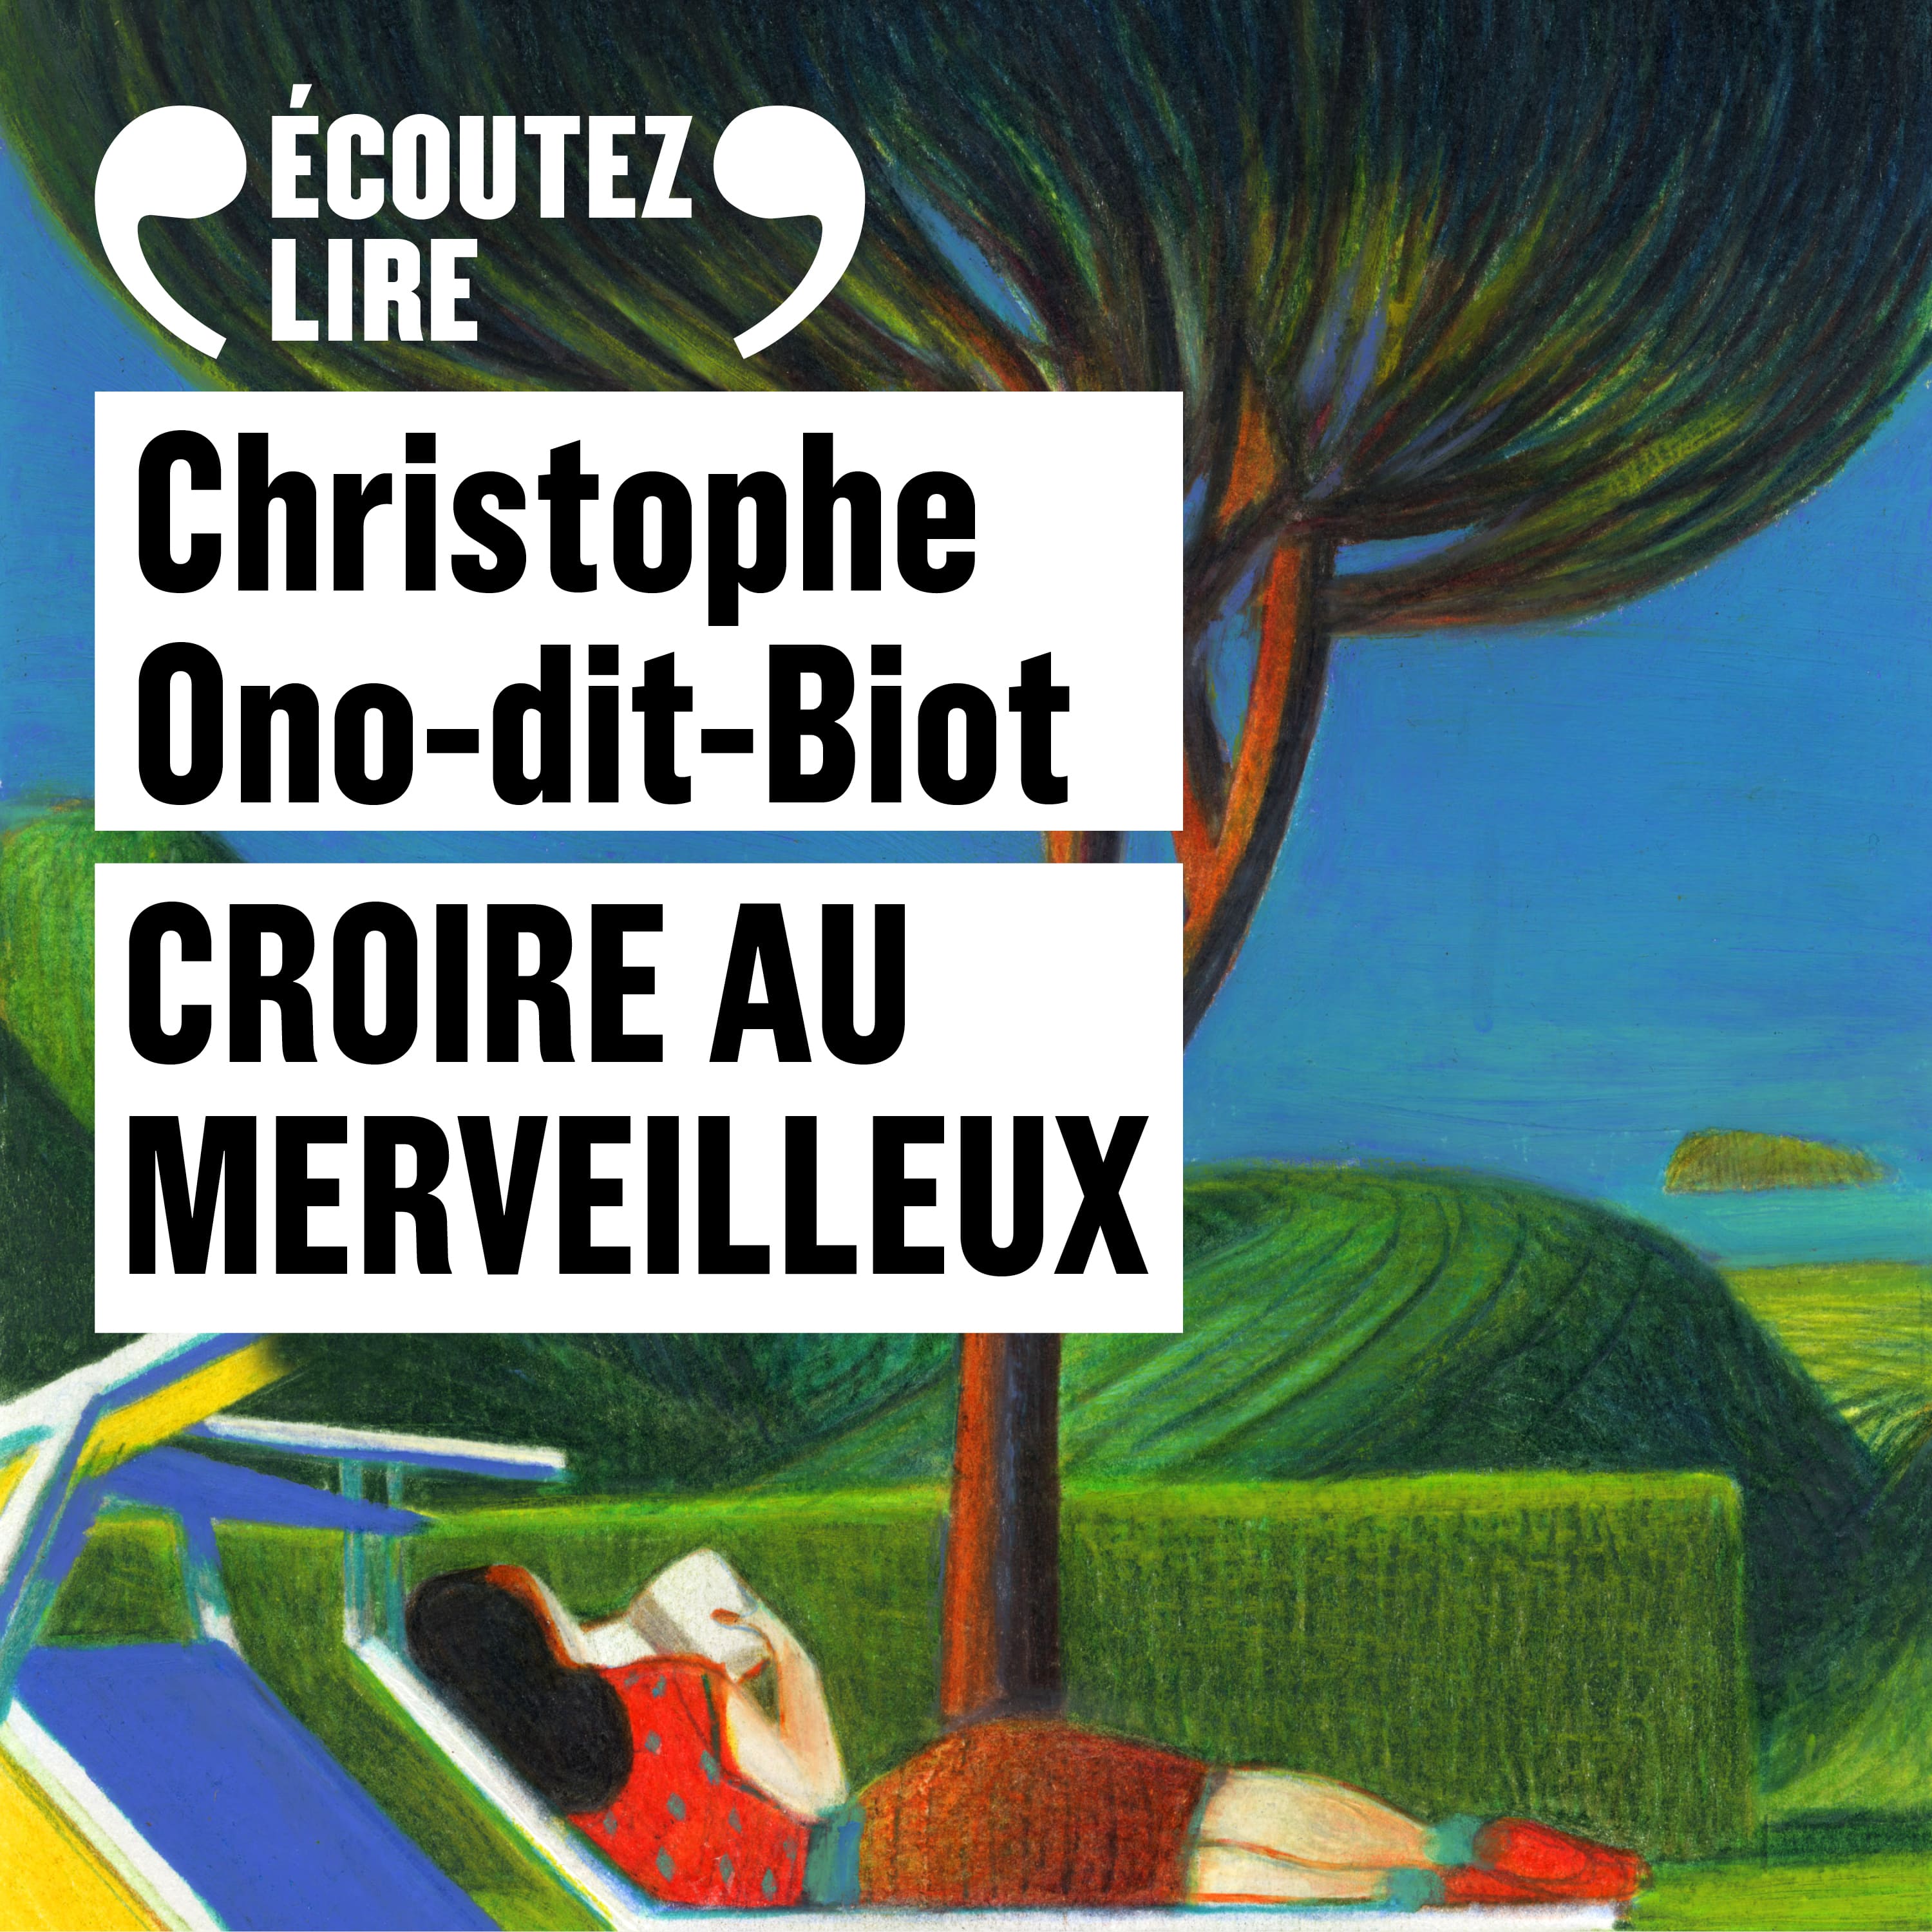 Couverture du livre audio Croire au merveilleux De Christophe Ono-dit-biot 